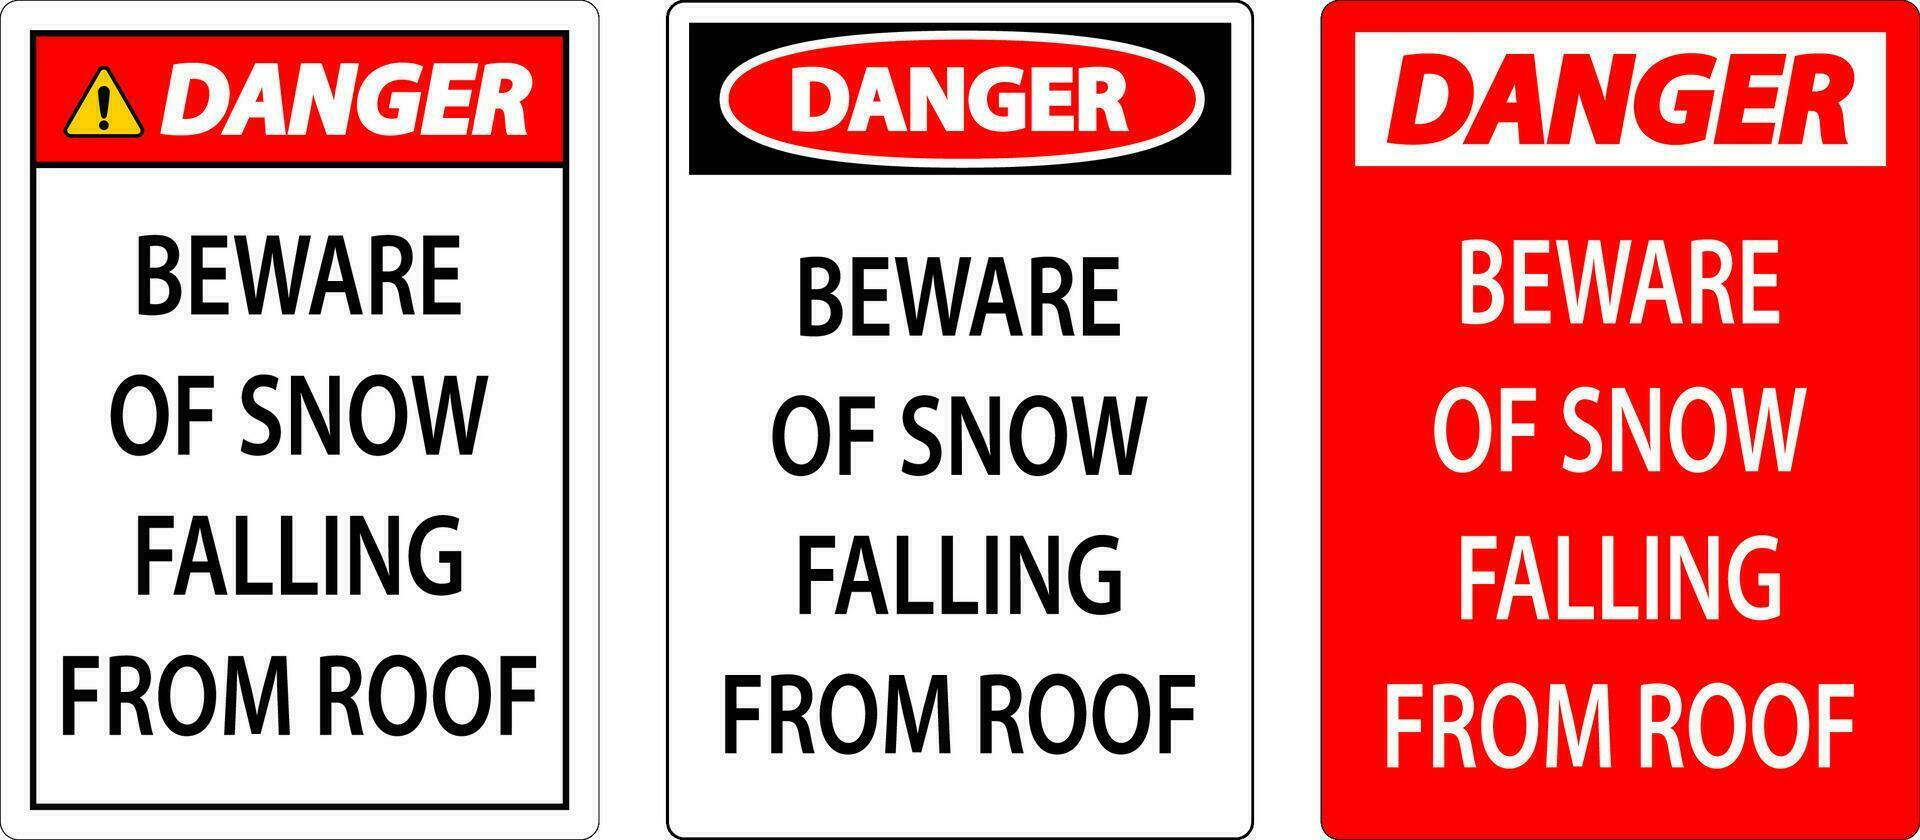 danger signe il faut se méfier de neige chute de toit vecteur